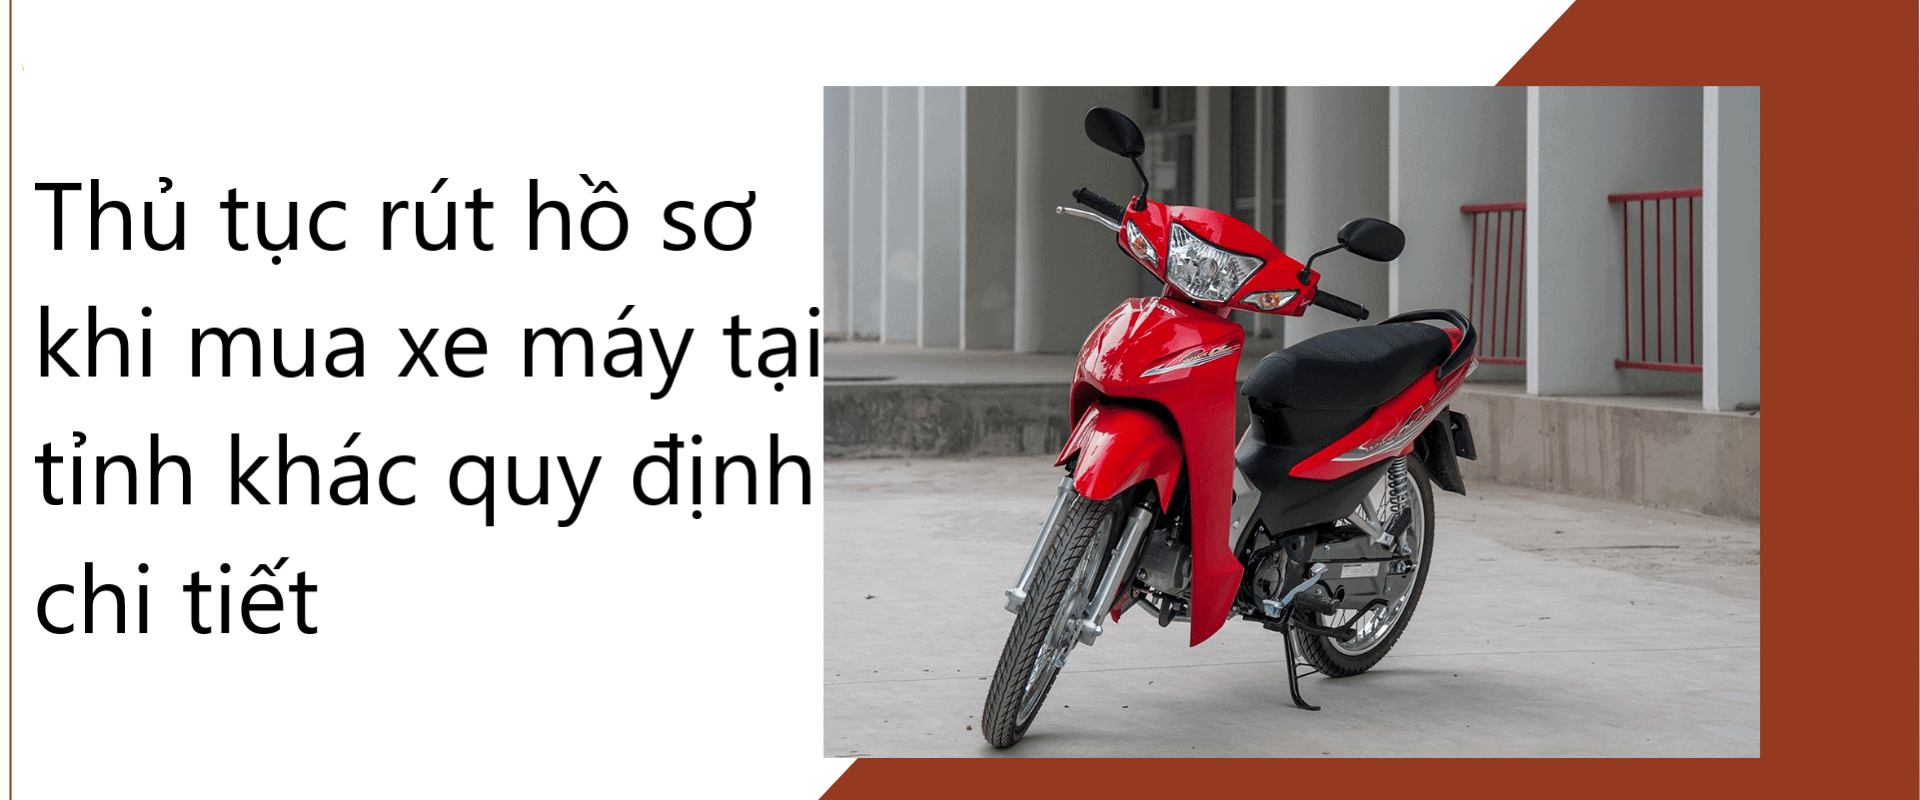 Thủ tục rút hồ sơ khi mua xe máy tại tỉnh khác quy định chi tiết